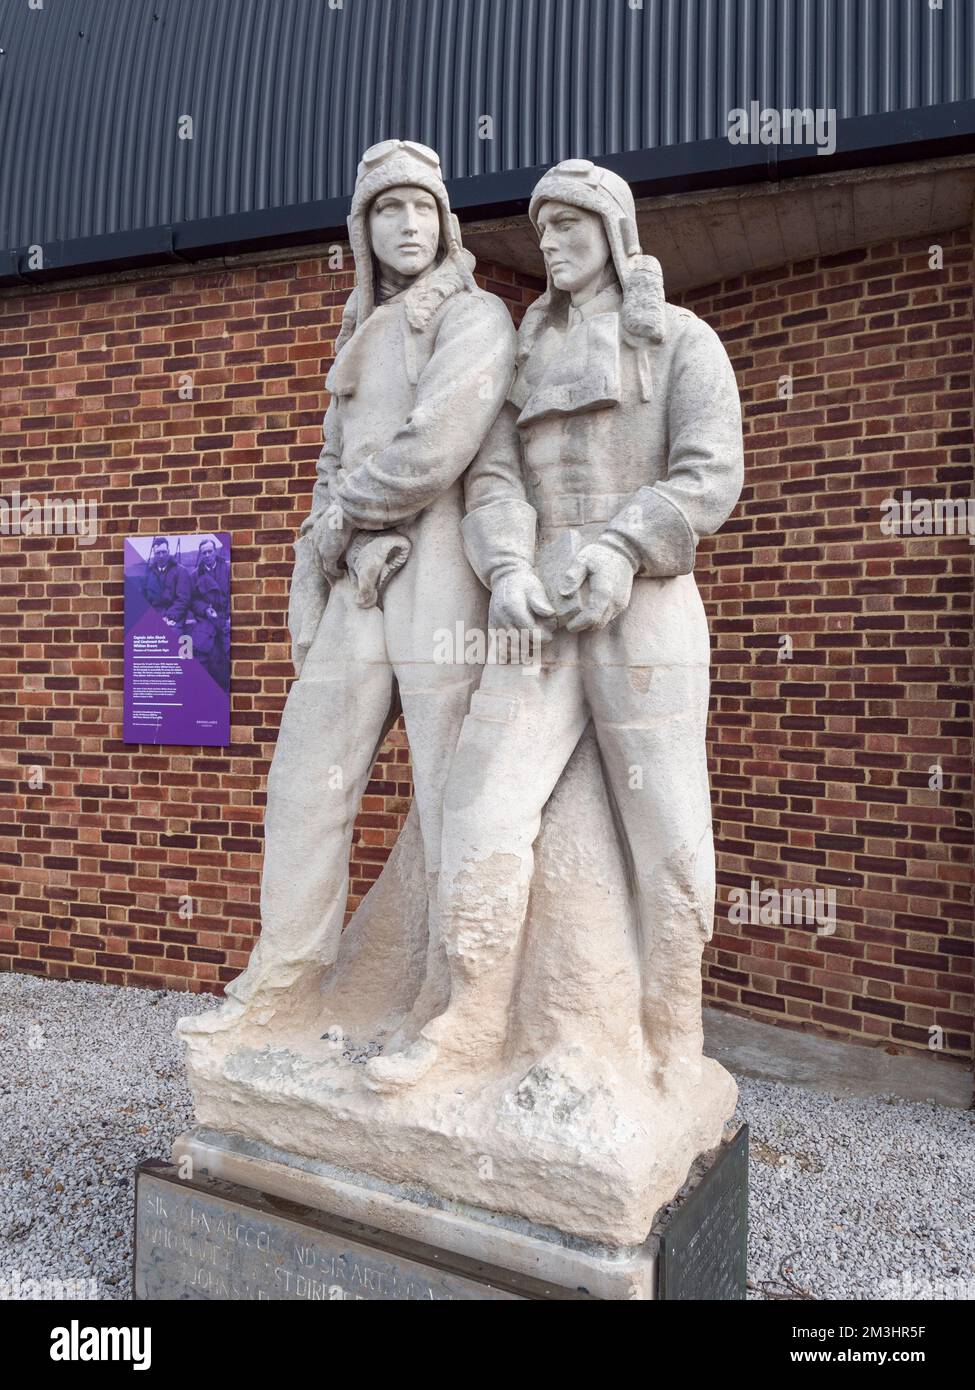 La statue d'Alcock et Brown commémorant le premier vol sans escale à travers l'Atlantique en 1919 au Brooklands Museum, Surrey, Royaume-Uni. Banque D'Images